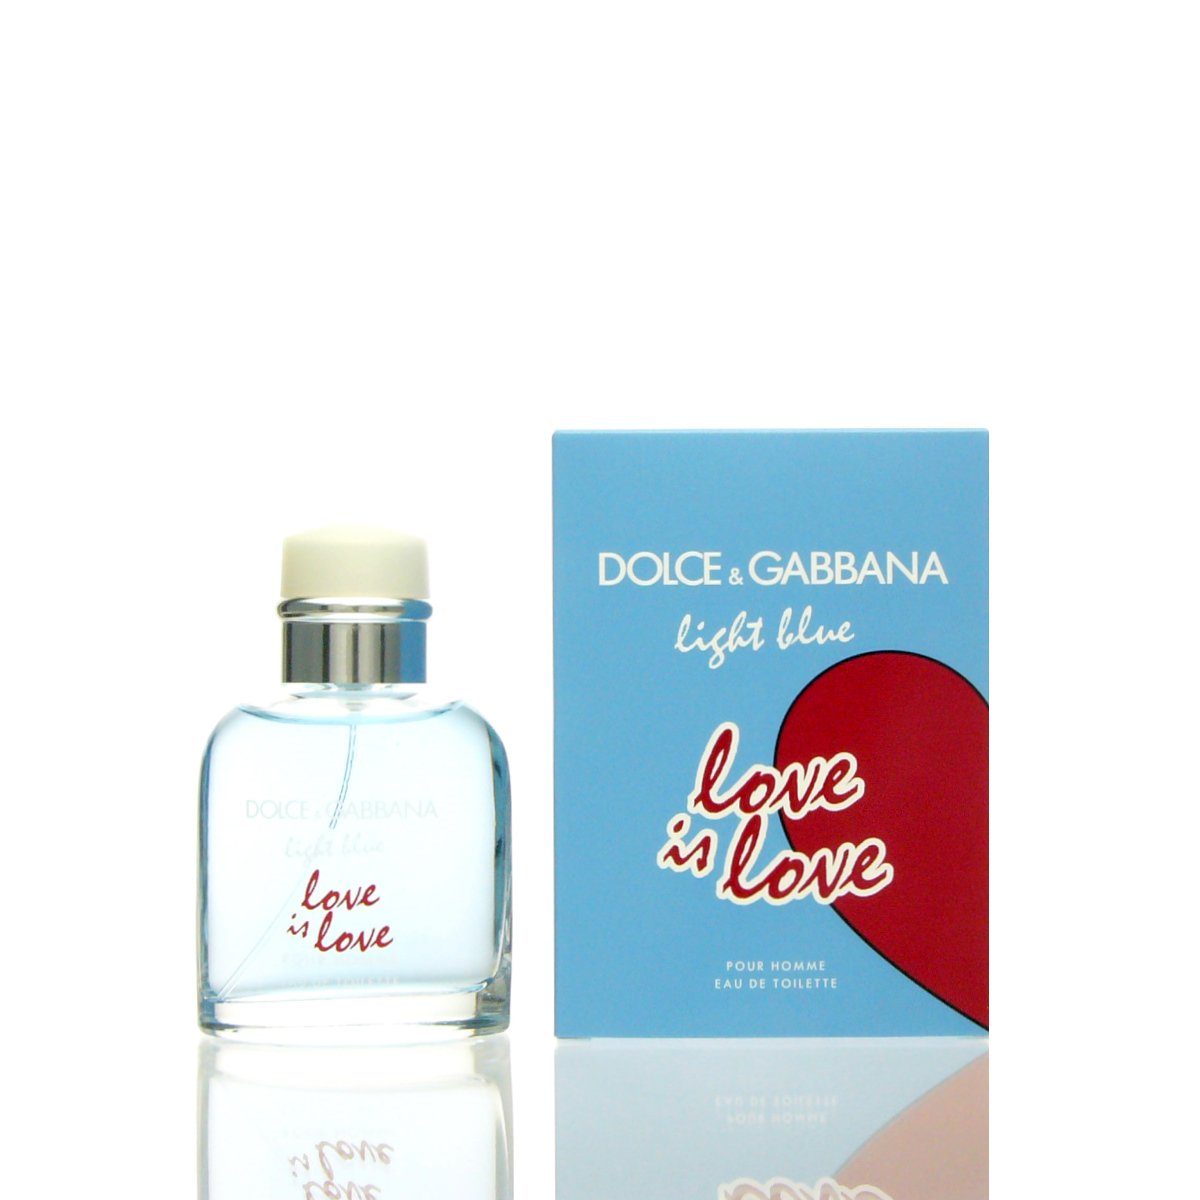 DOLCE & GABBANA is Pour D&G Gabbana Love Eau Dolce de Blue & Toilette Light Love